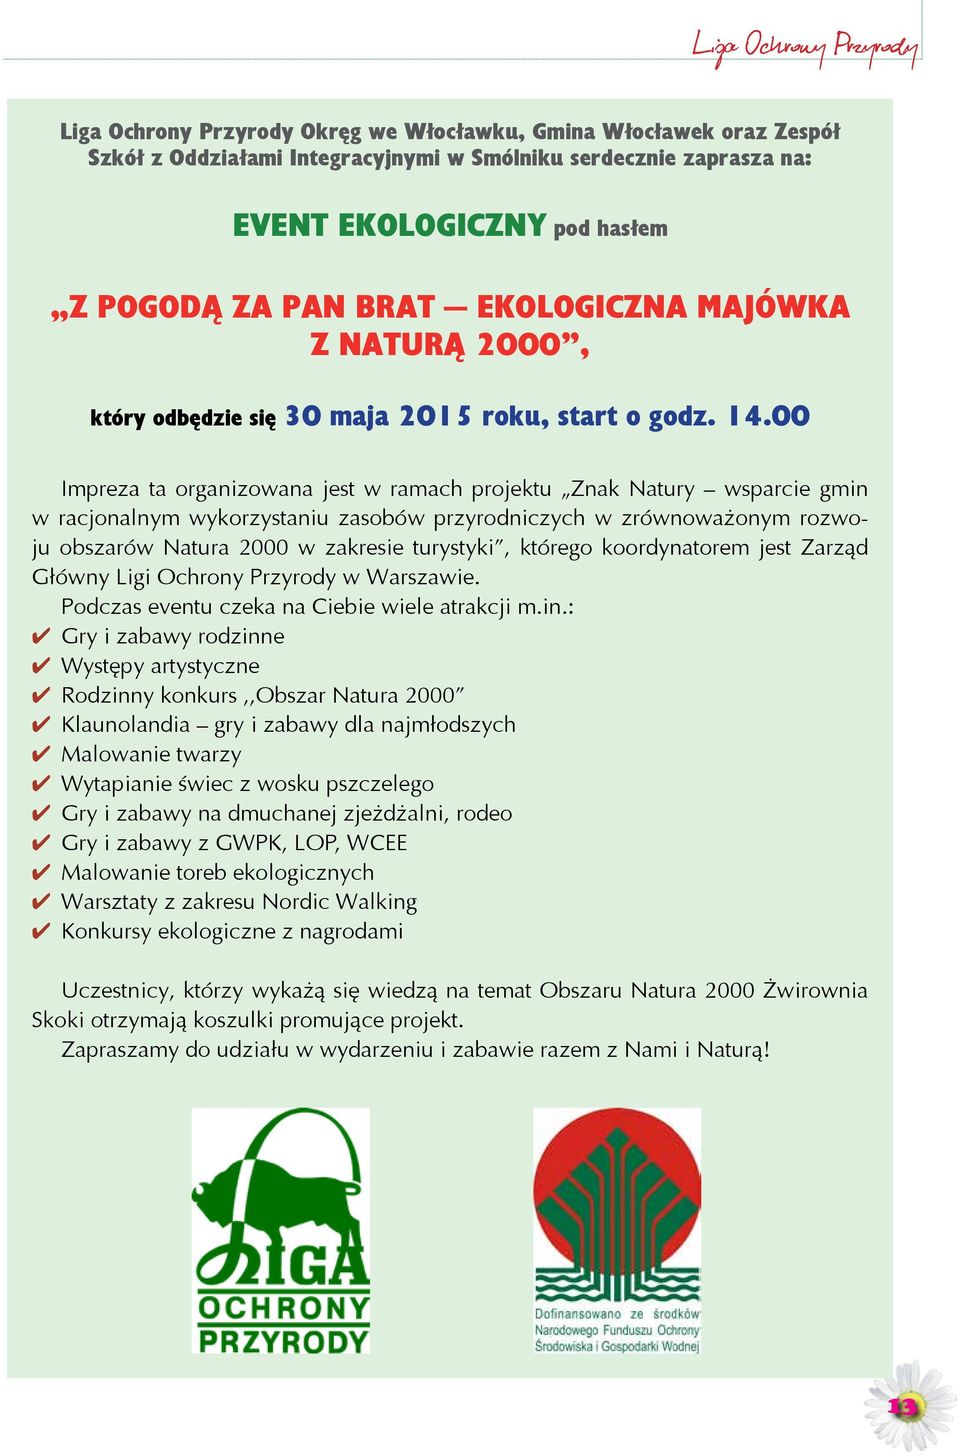 00 Impreza ta organizowana jest w ramach projektu Znak Natury wsparcie gmin w racjonalnym wykorzystaniu zasobów przyrodniczych w zrównoważonym rozwoju obszarów Natura 2000 w zakresie turystyki,